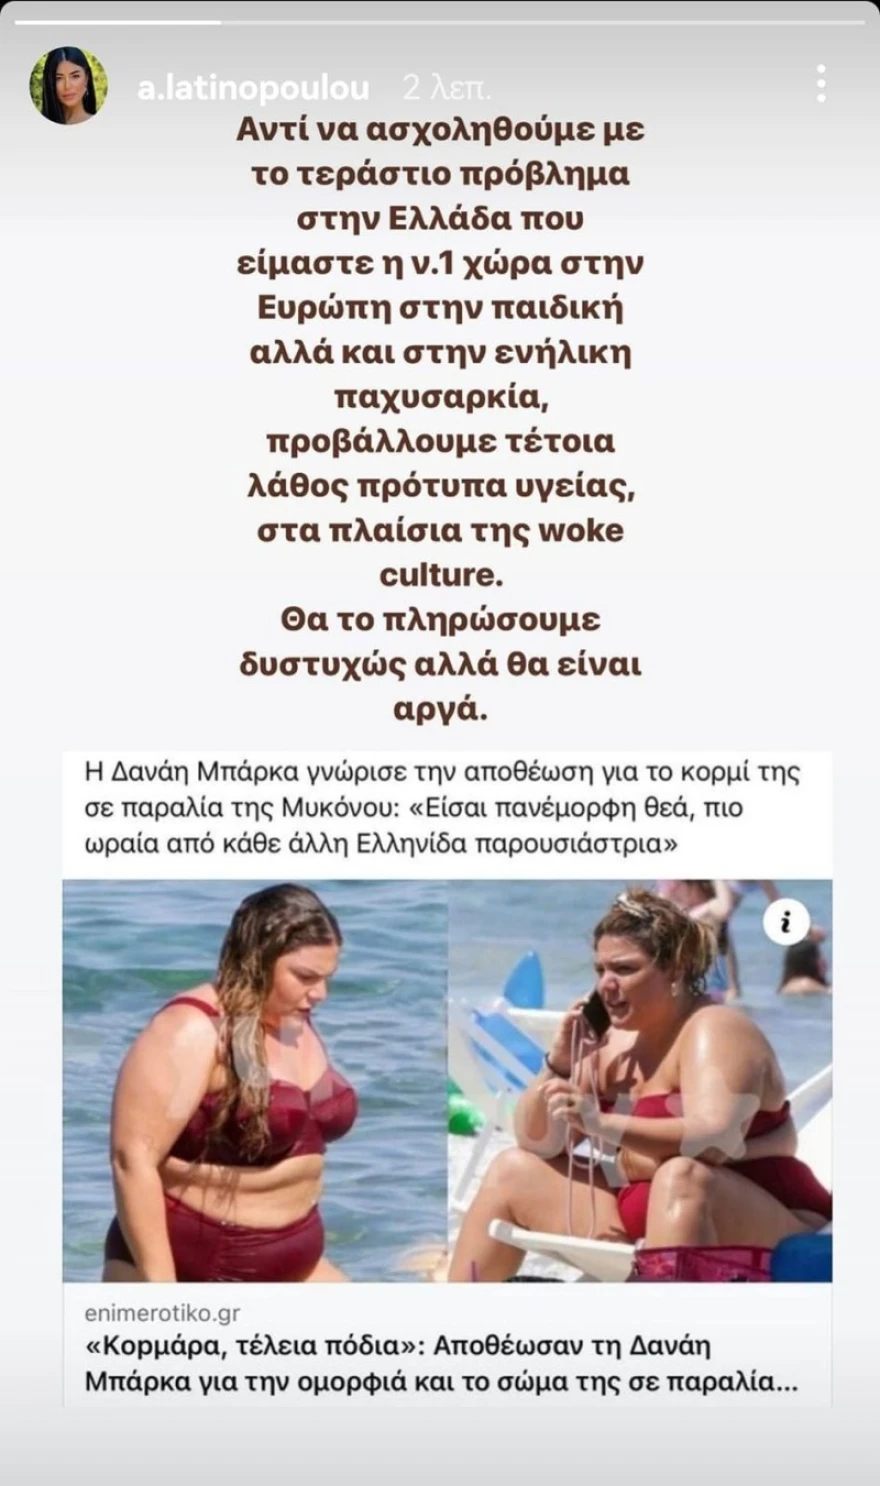 Αφροδίτη Λατινοπούλου για Δανάη Μπάρκα: «Προβάλλουμε λάθος πρότυπα, άτομα με παχυσαρκία»